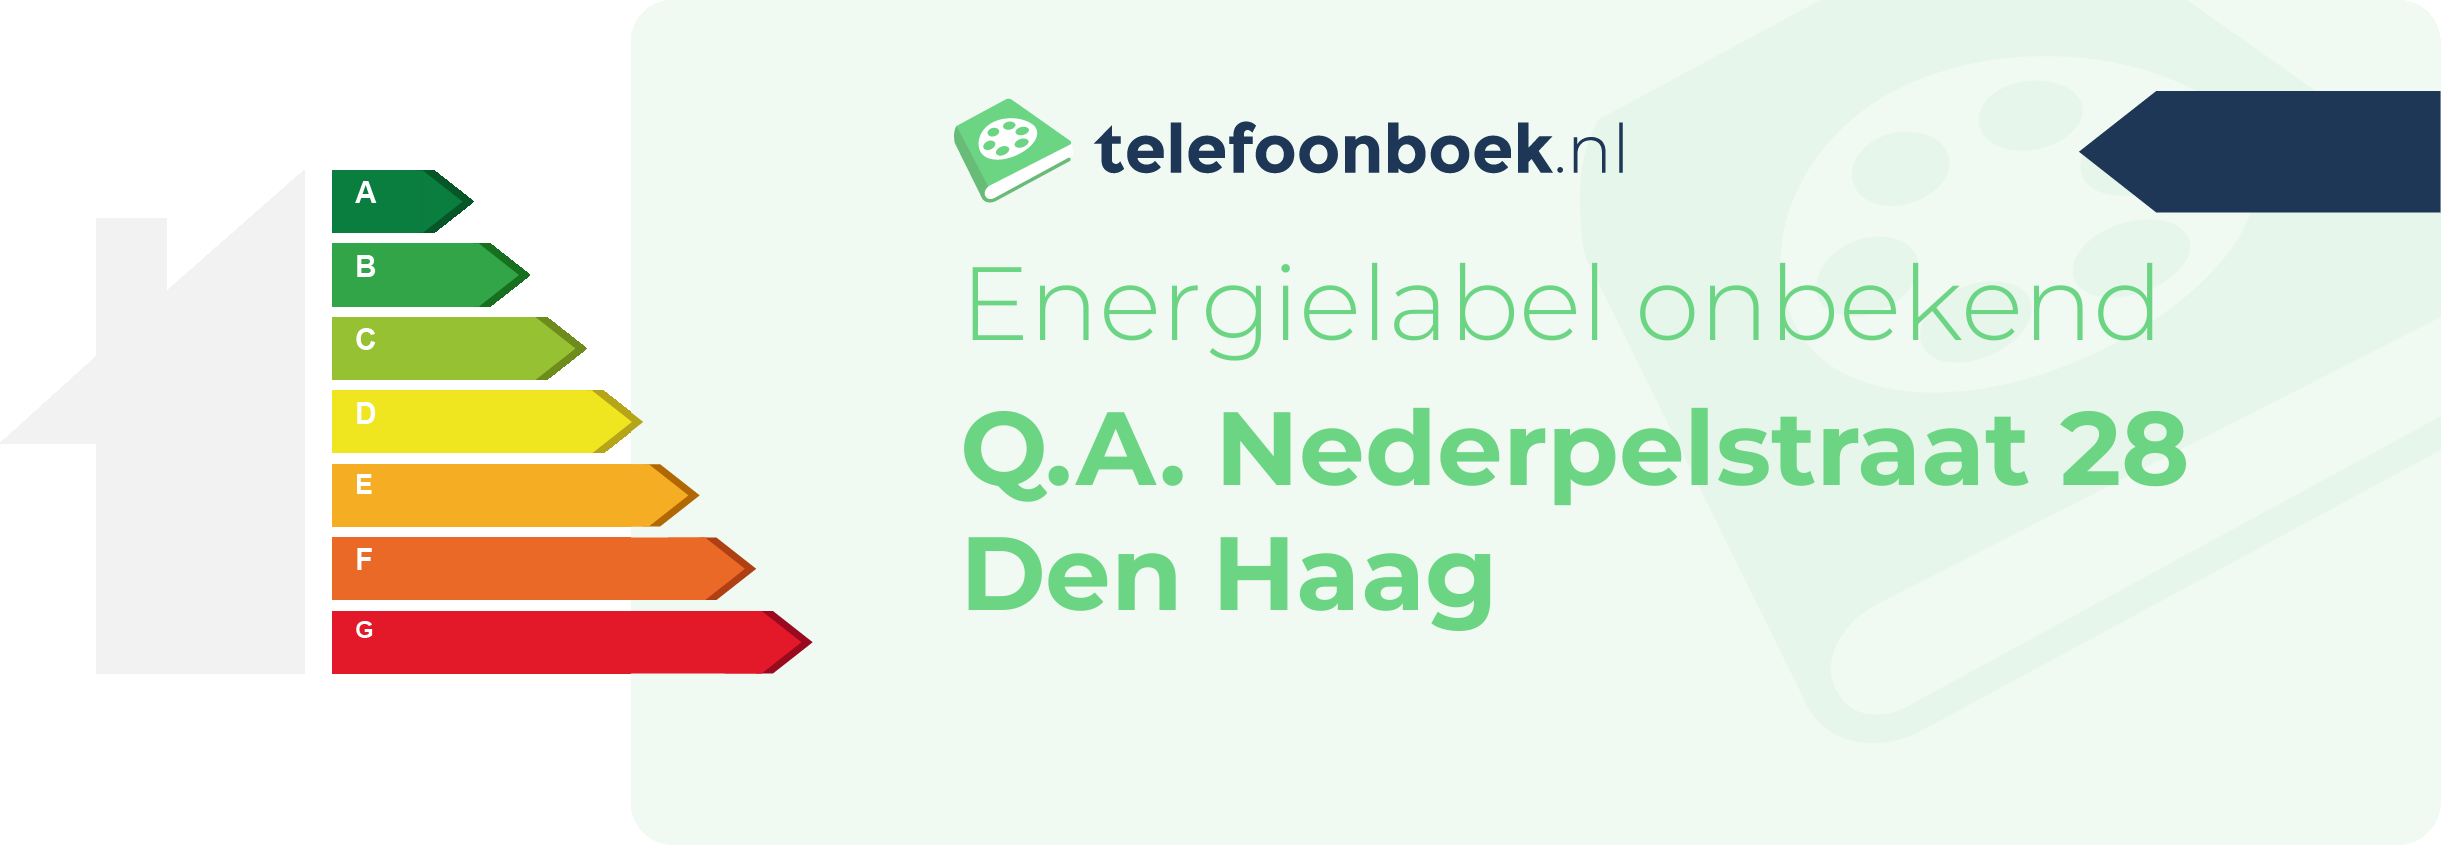 Energielabel Q.A. Nederpelstraat 28 Den Haag